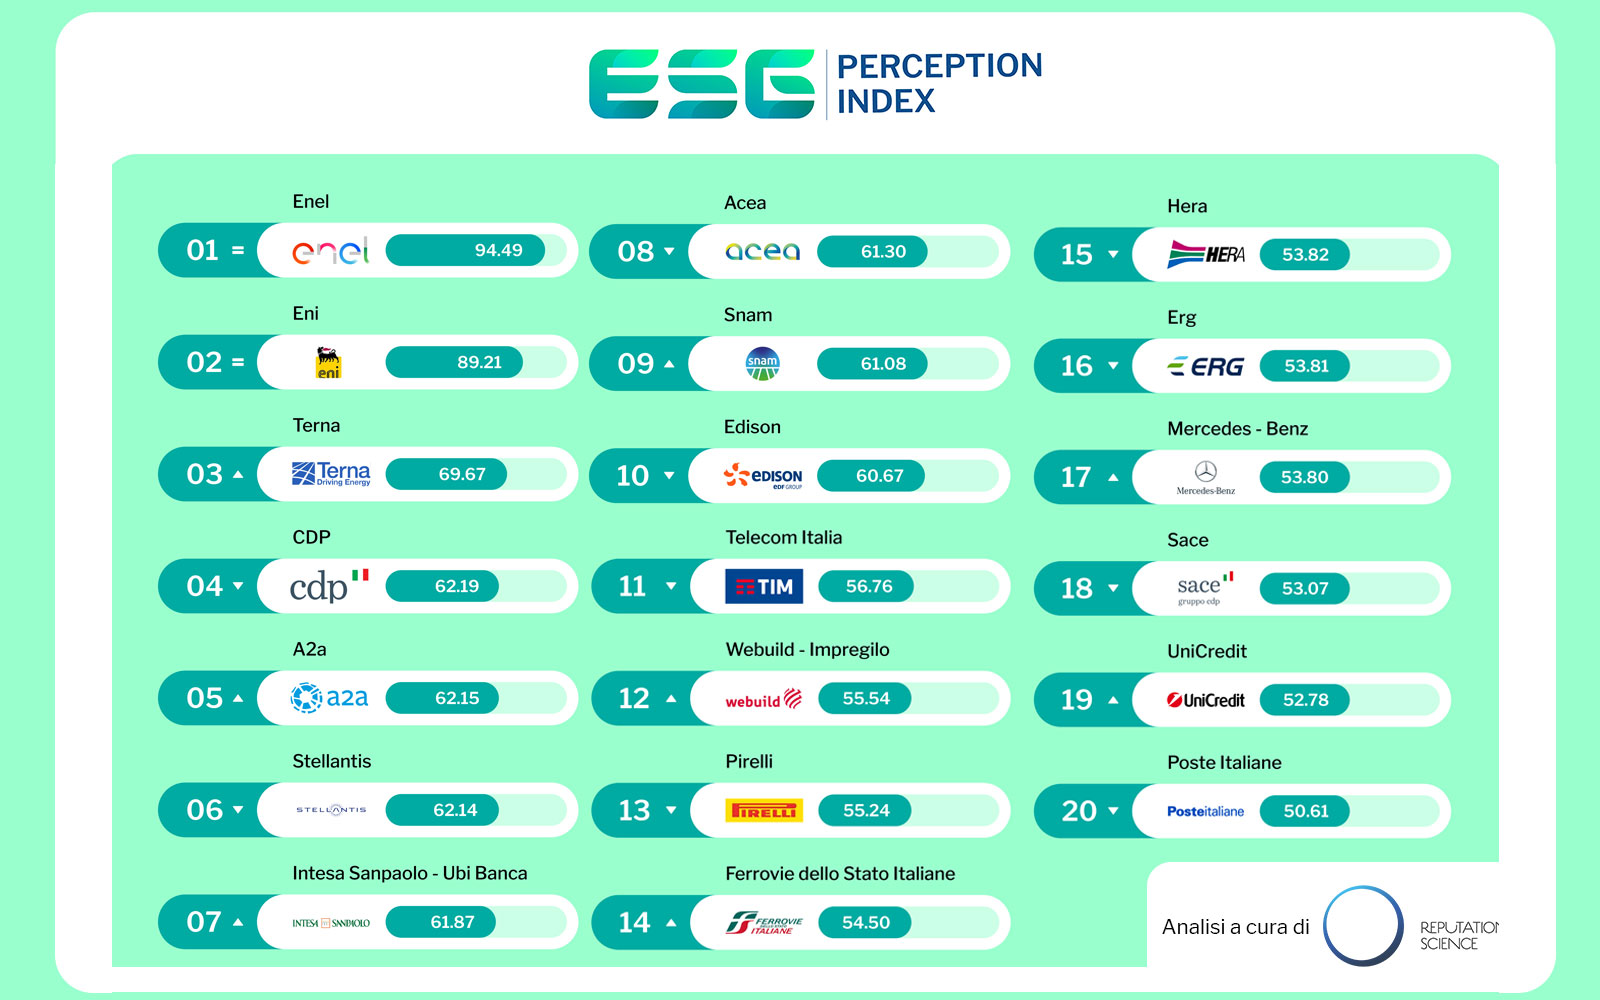 ESG Perception Index, le aziende percepite come più sostenibili sul web: Enel si conferma prima, secondo posto per Eni. Terna sale sul podio